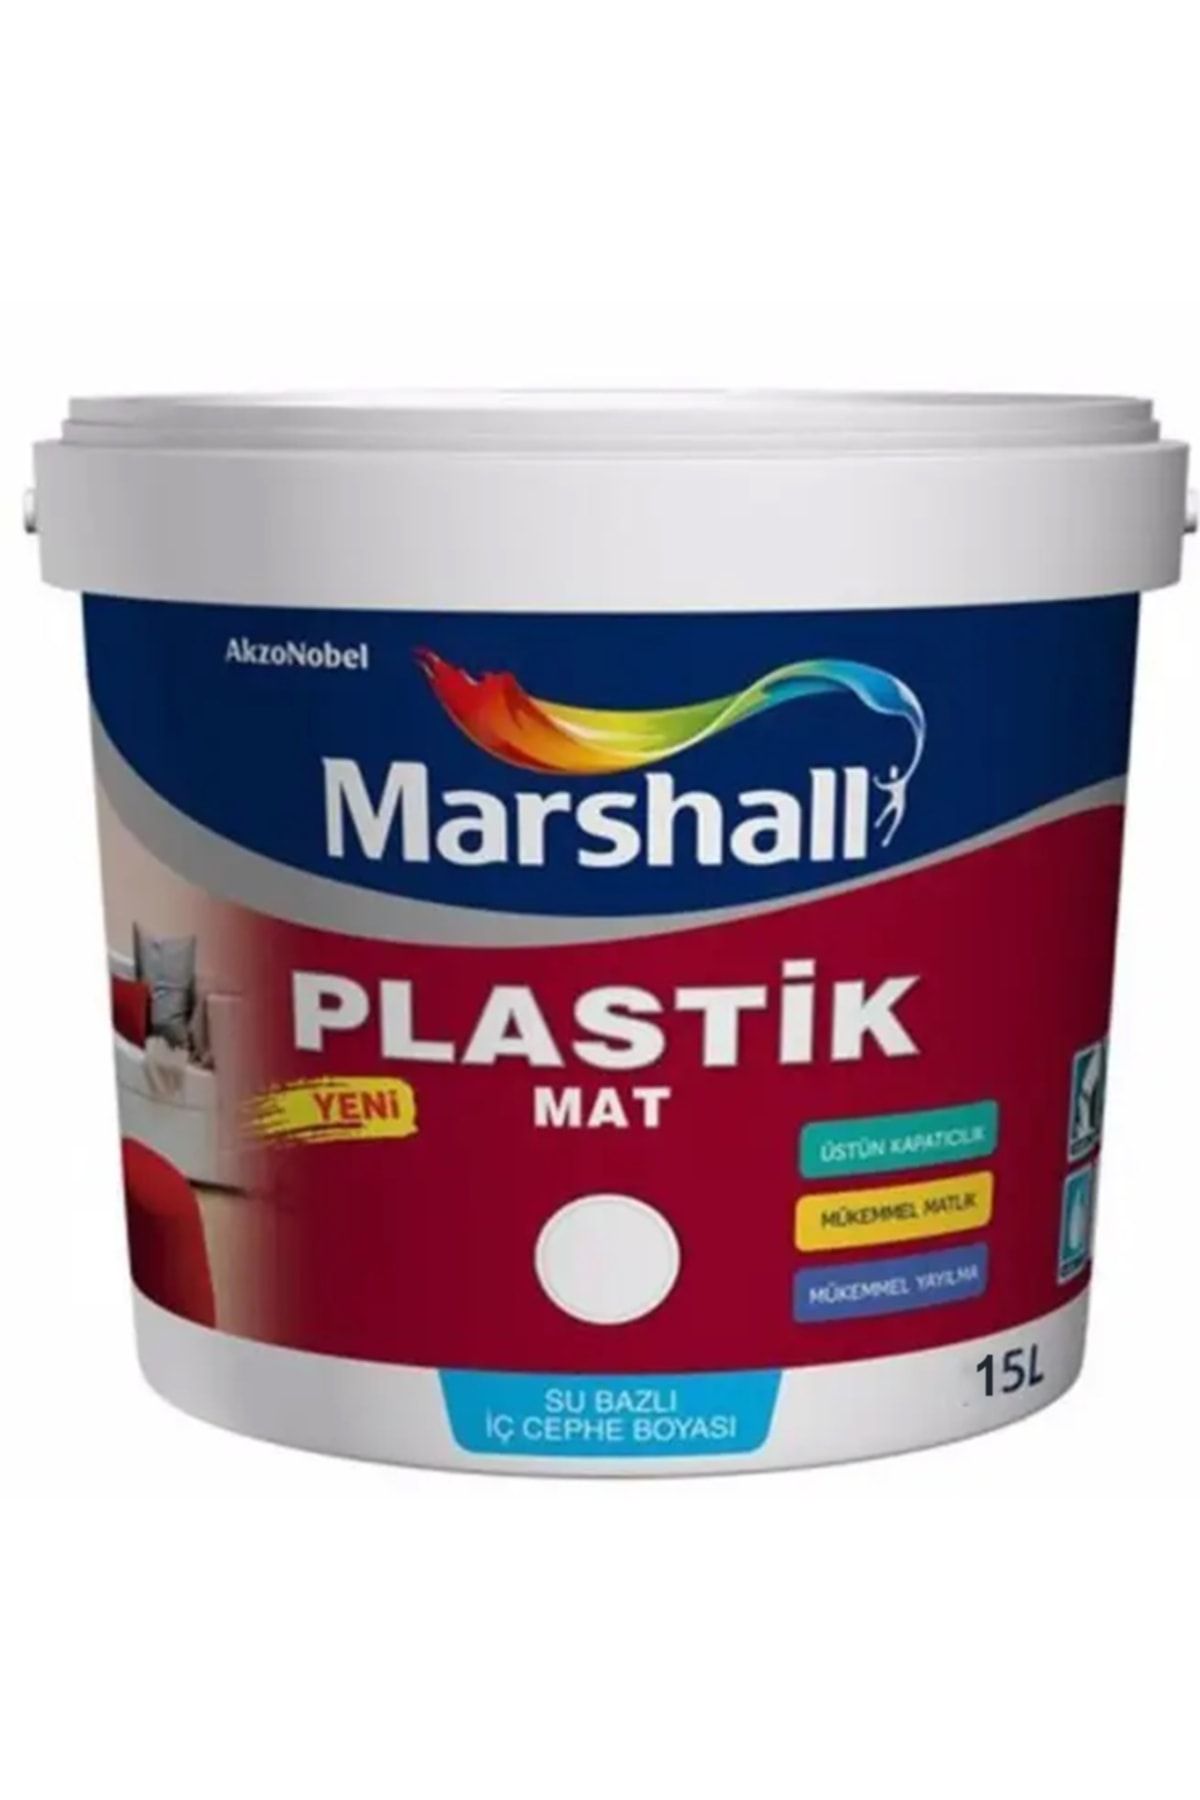 Marshall Plastik Mat Silinebilir Iç Cephe Boyası Mor Salkım 15 Lt (20 Kg)